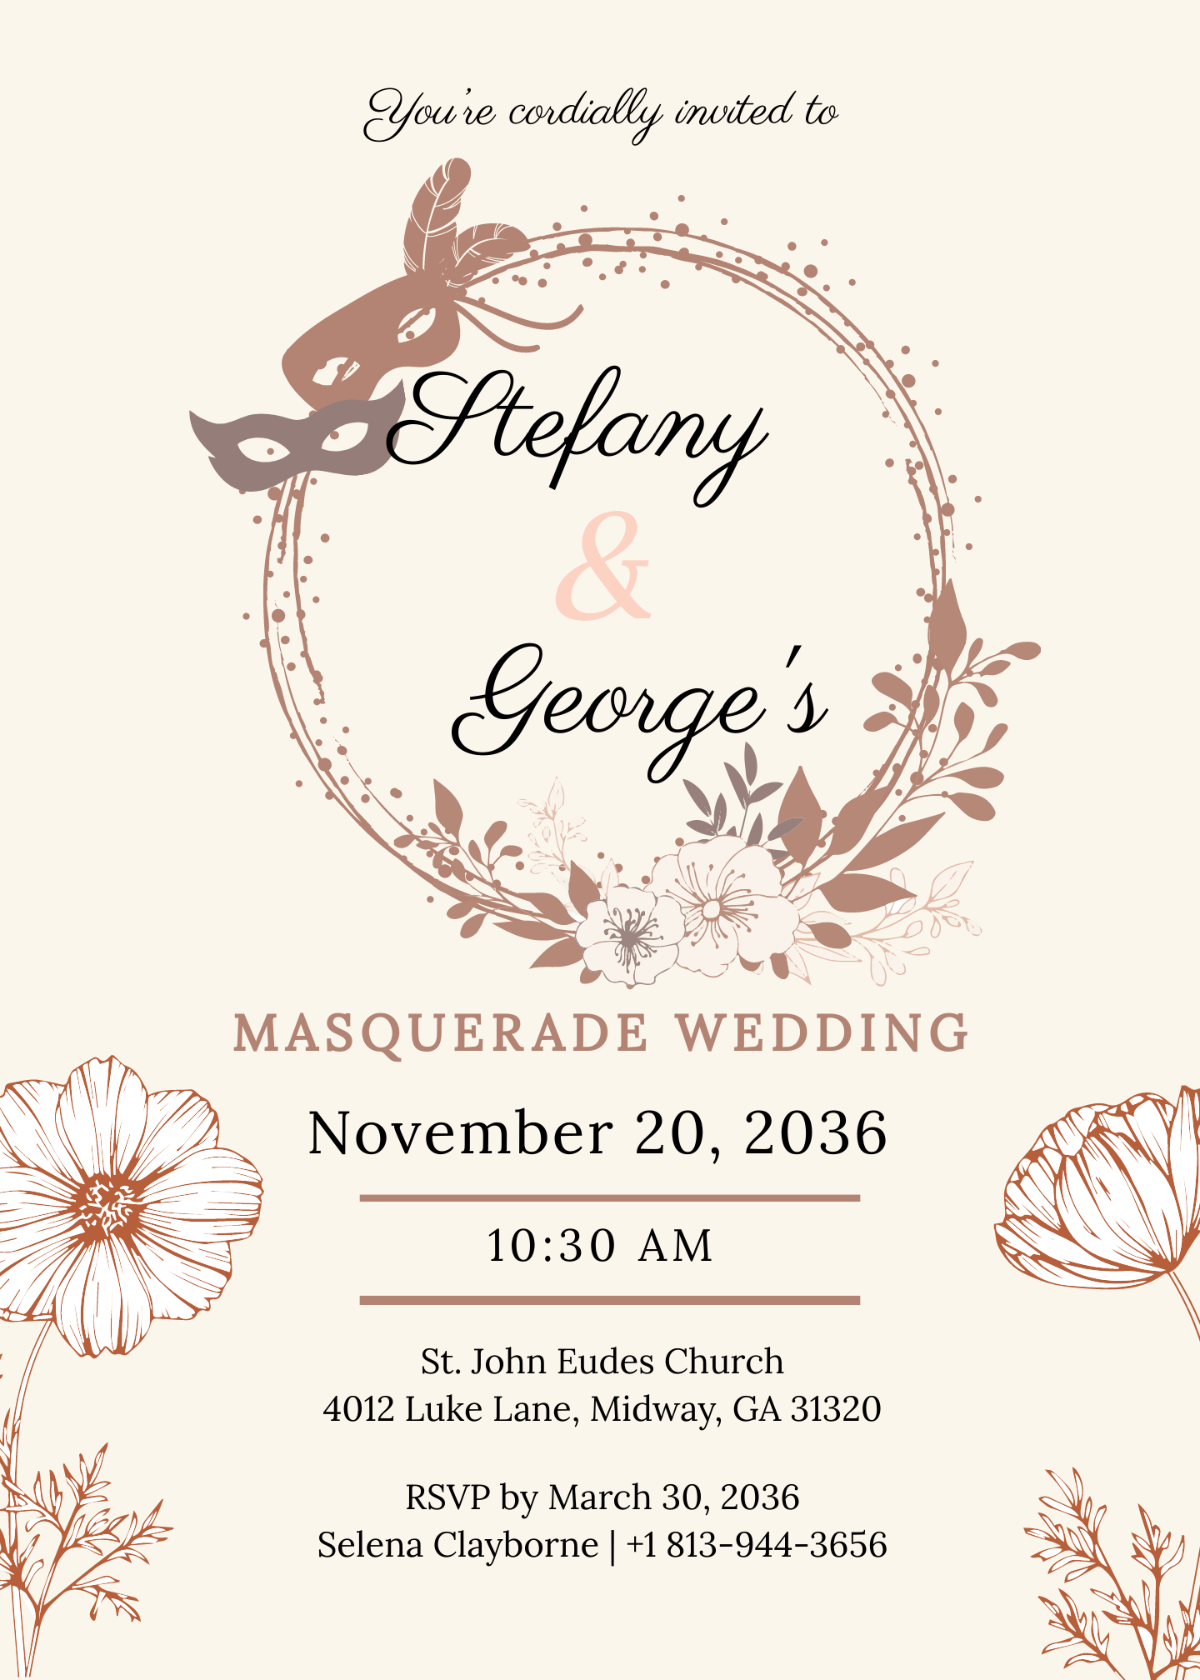 Masquerade Wedding Invitation Template